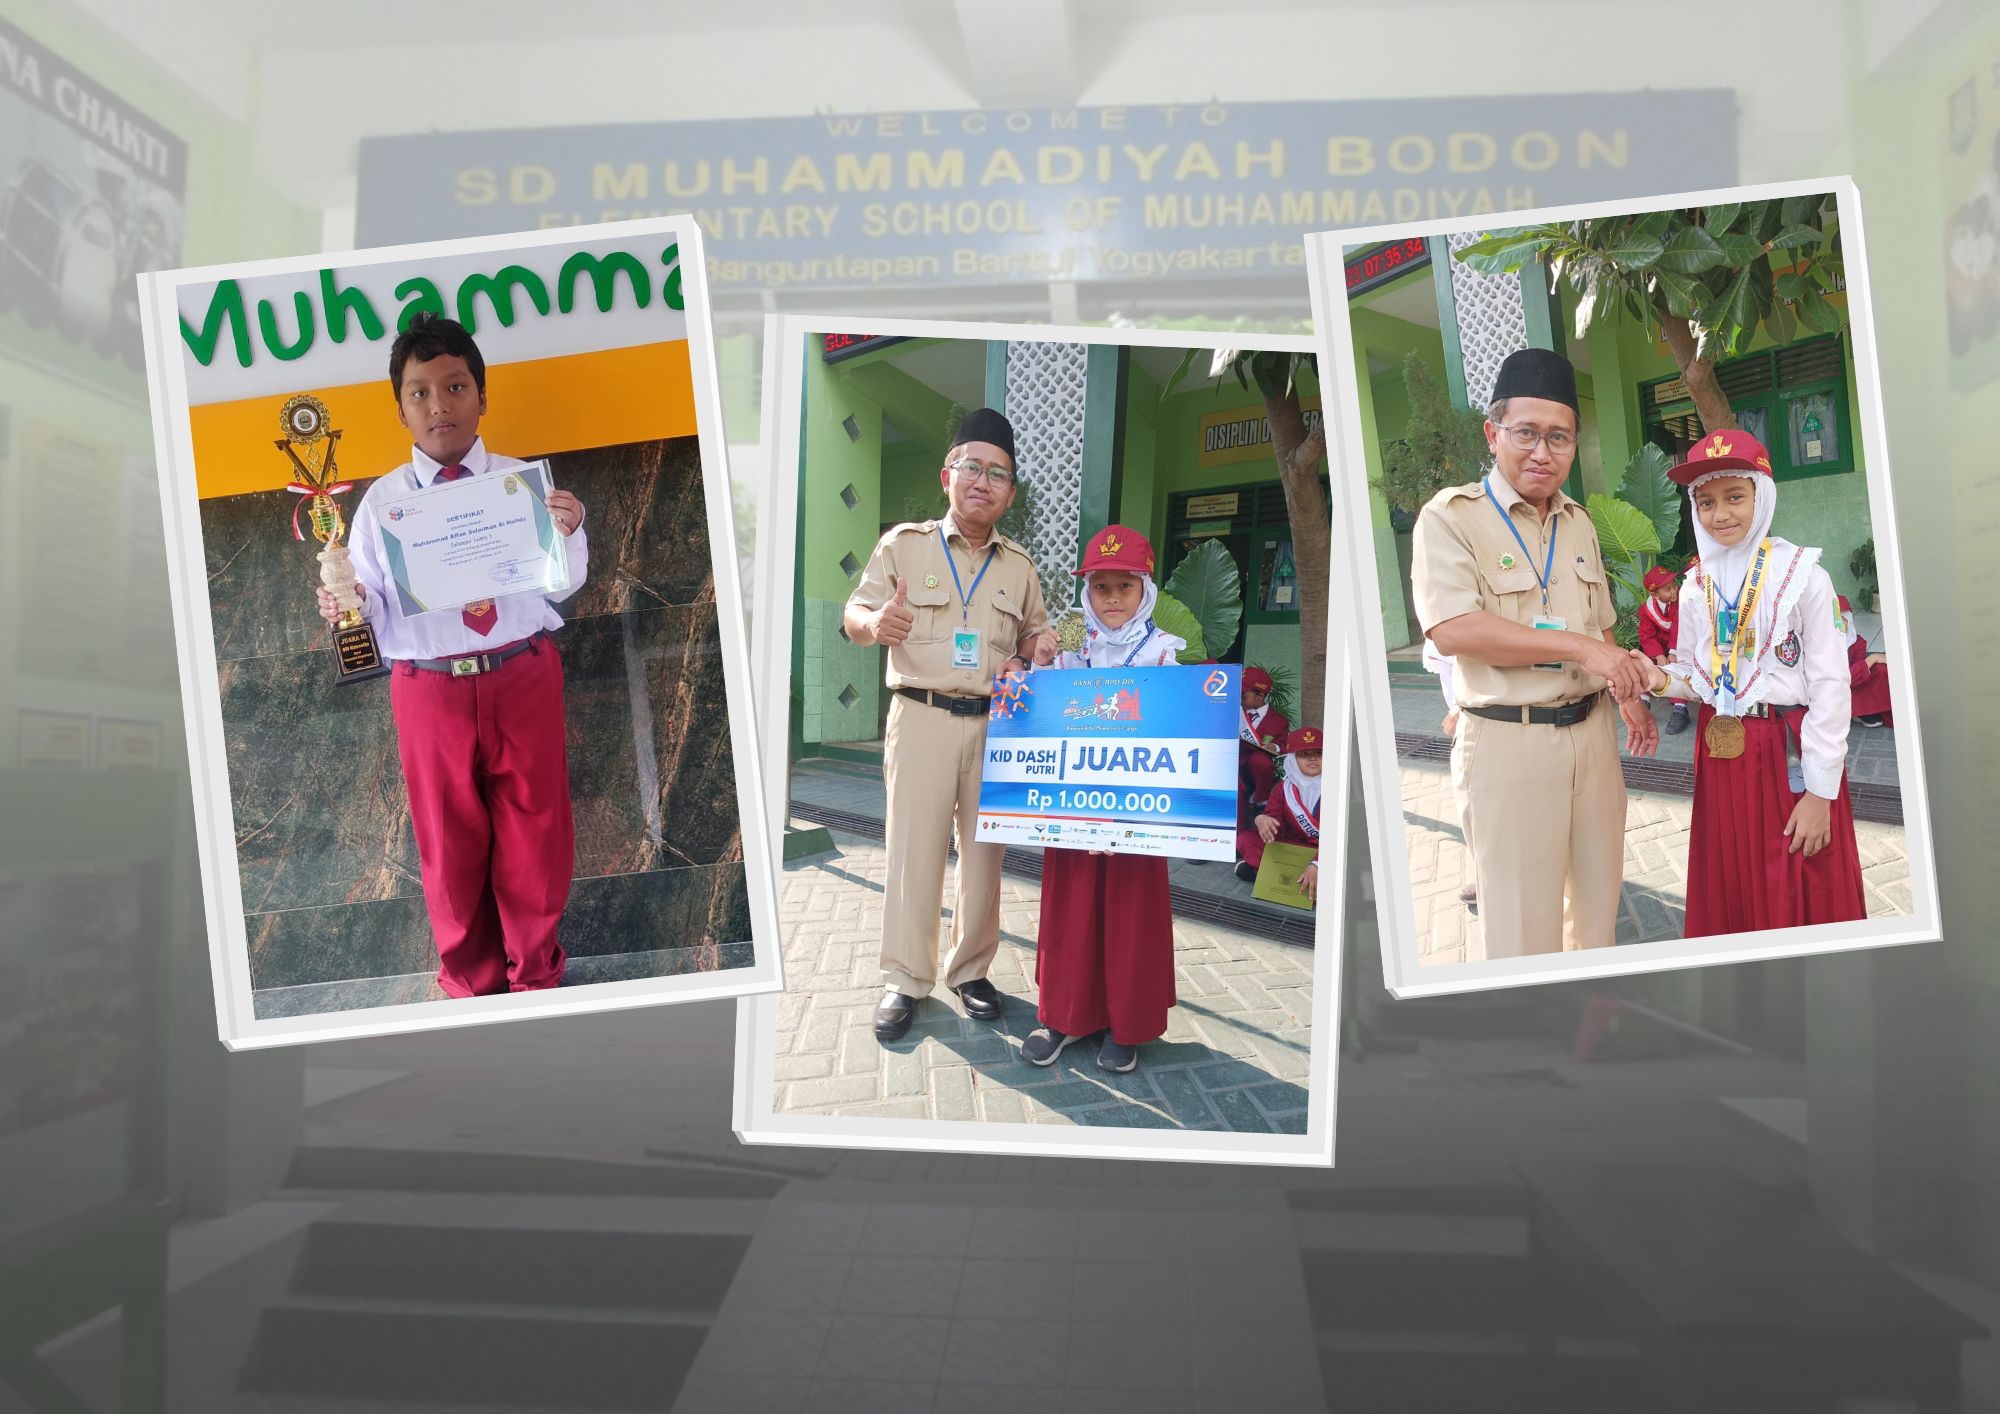 Siswa SD Muhammadiyah Bodon Torehkan Prestasi Gemilang